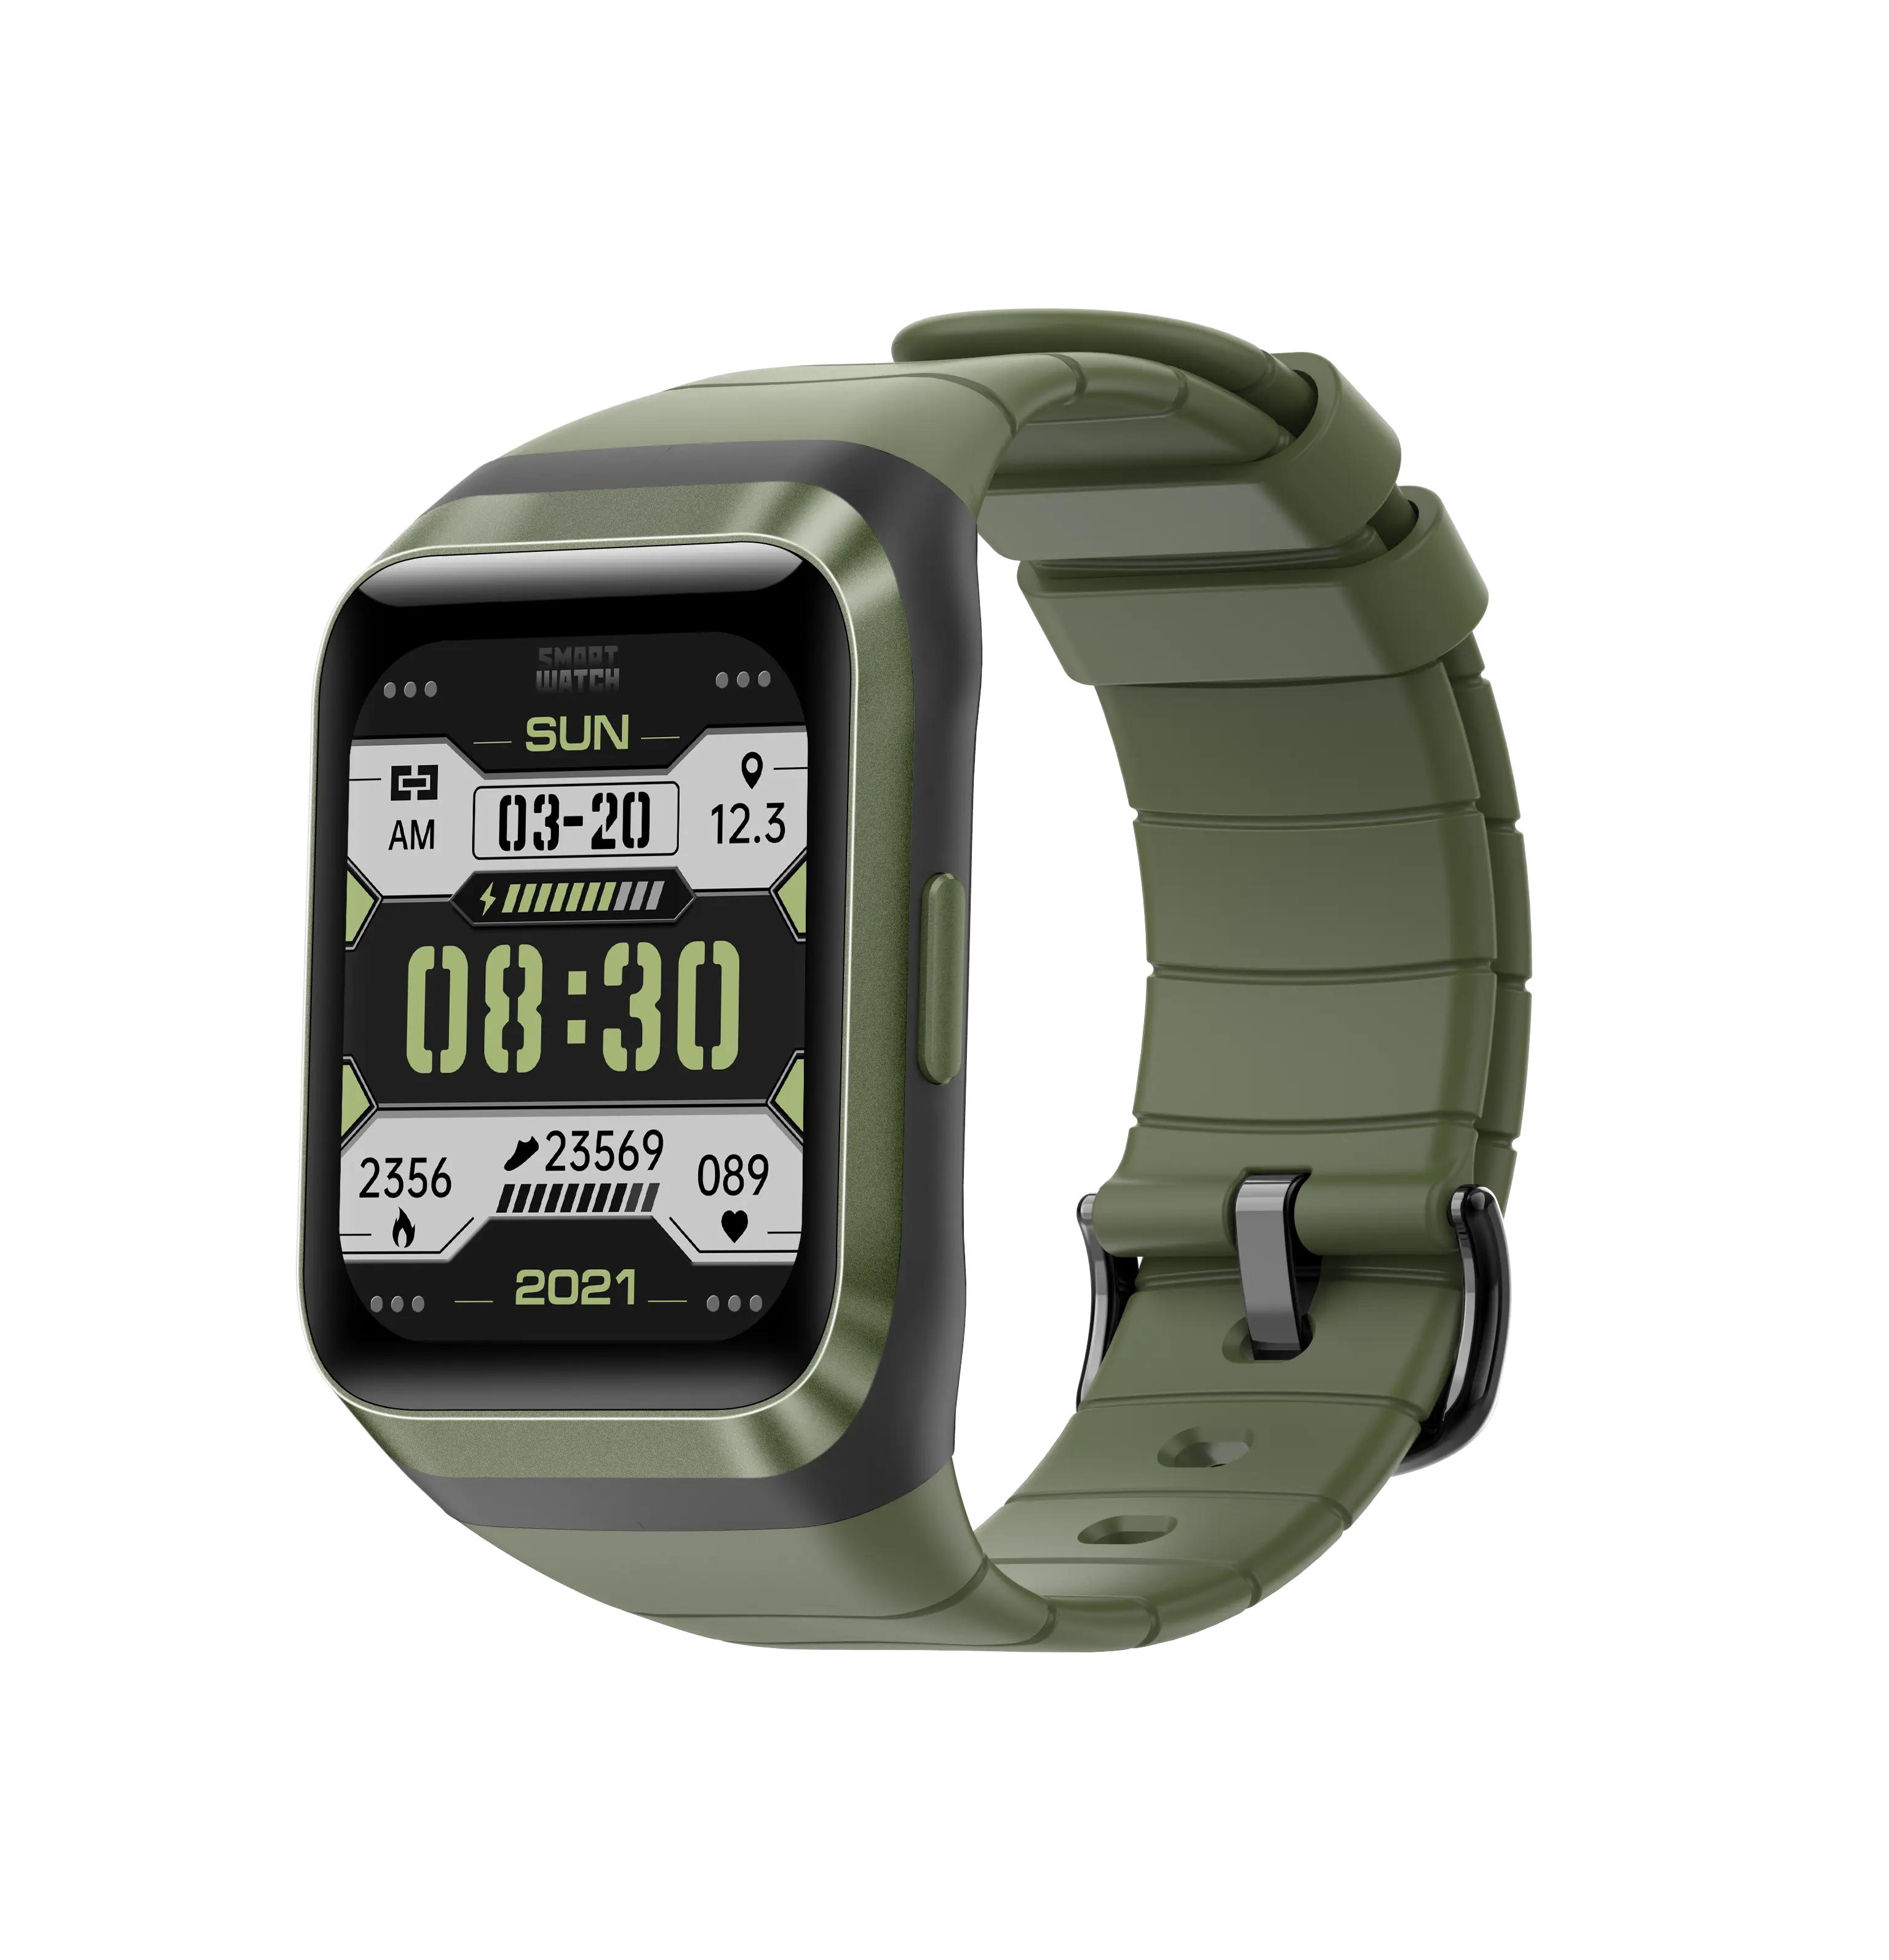 VALDUS Neue Produktideen Smart Watch GPS Tracker Smart Tech Gerät Smart Watch IP68 GPS Tracking Armband für ältere Menschen